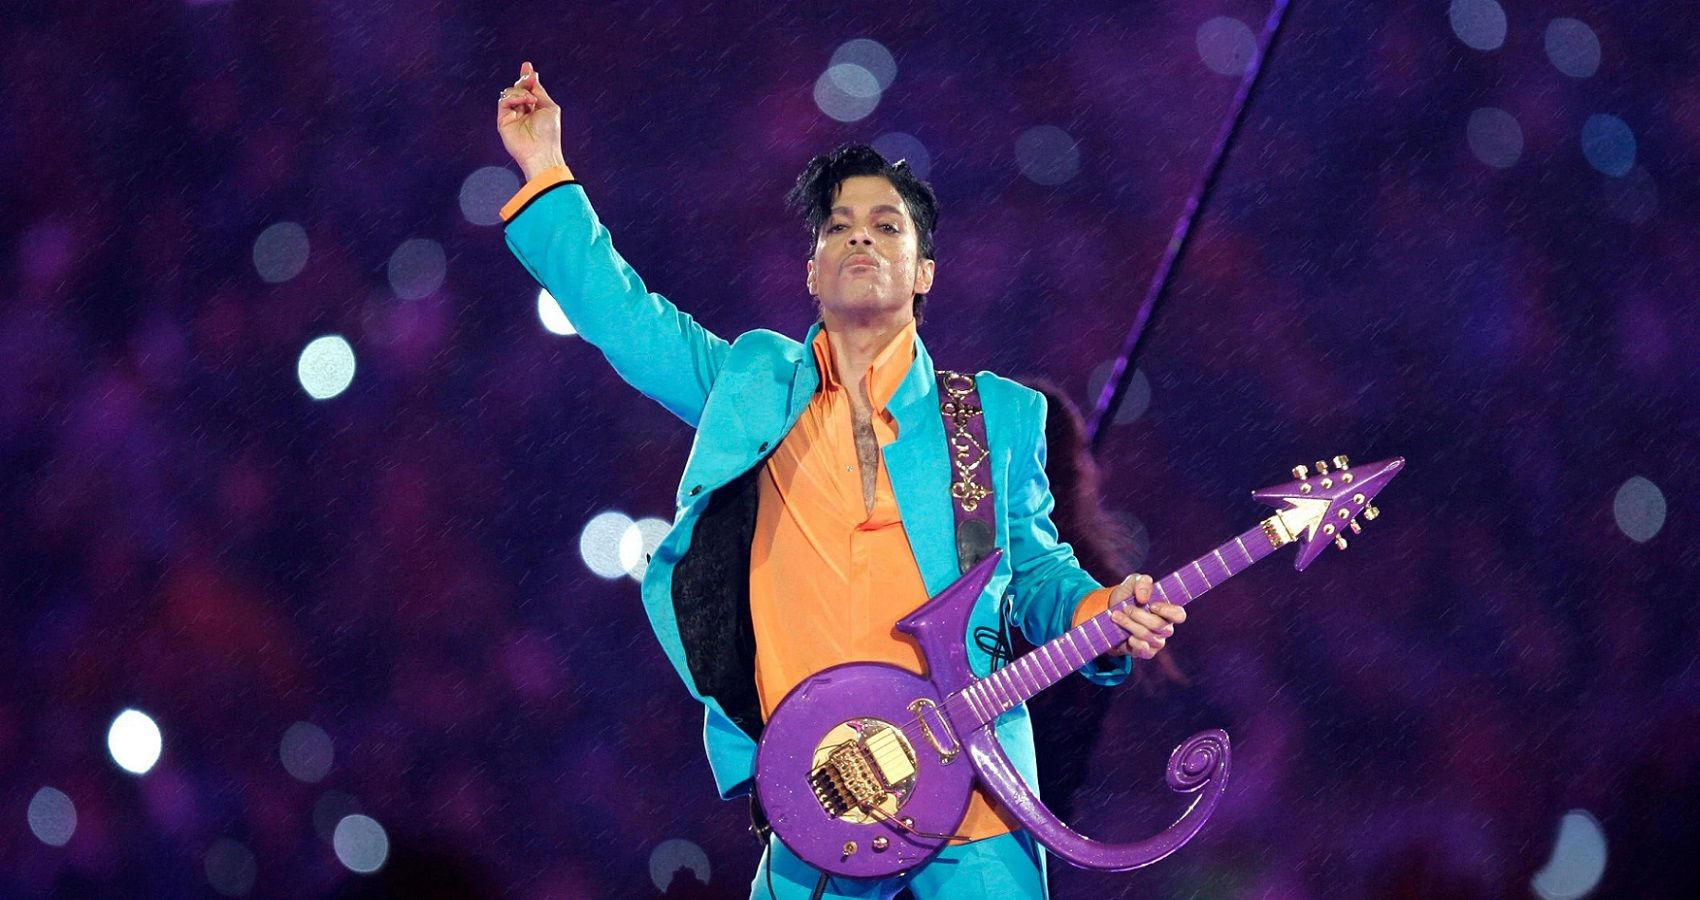 Exatamente o que aconteceu com o patrimônio líquido insano de Prince depois que ele morreu